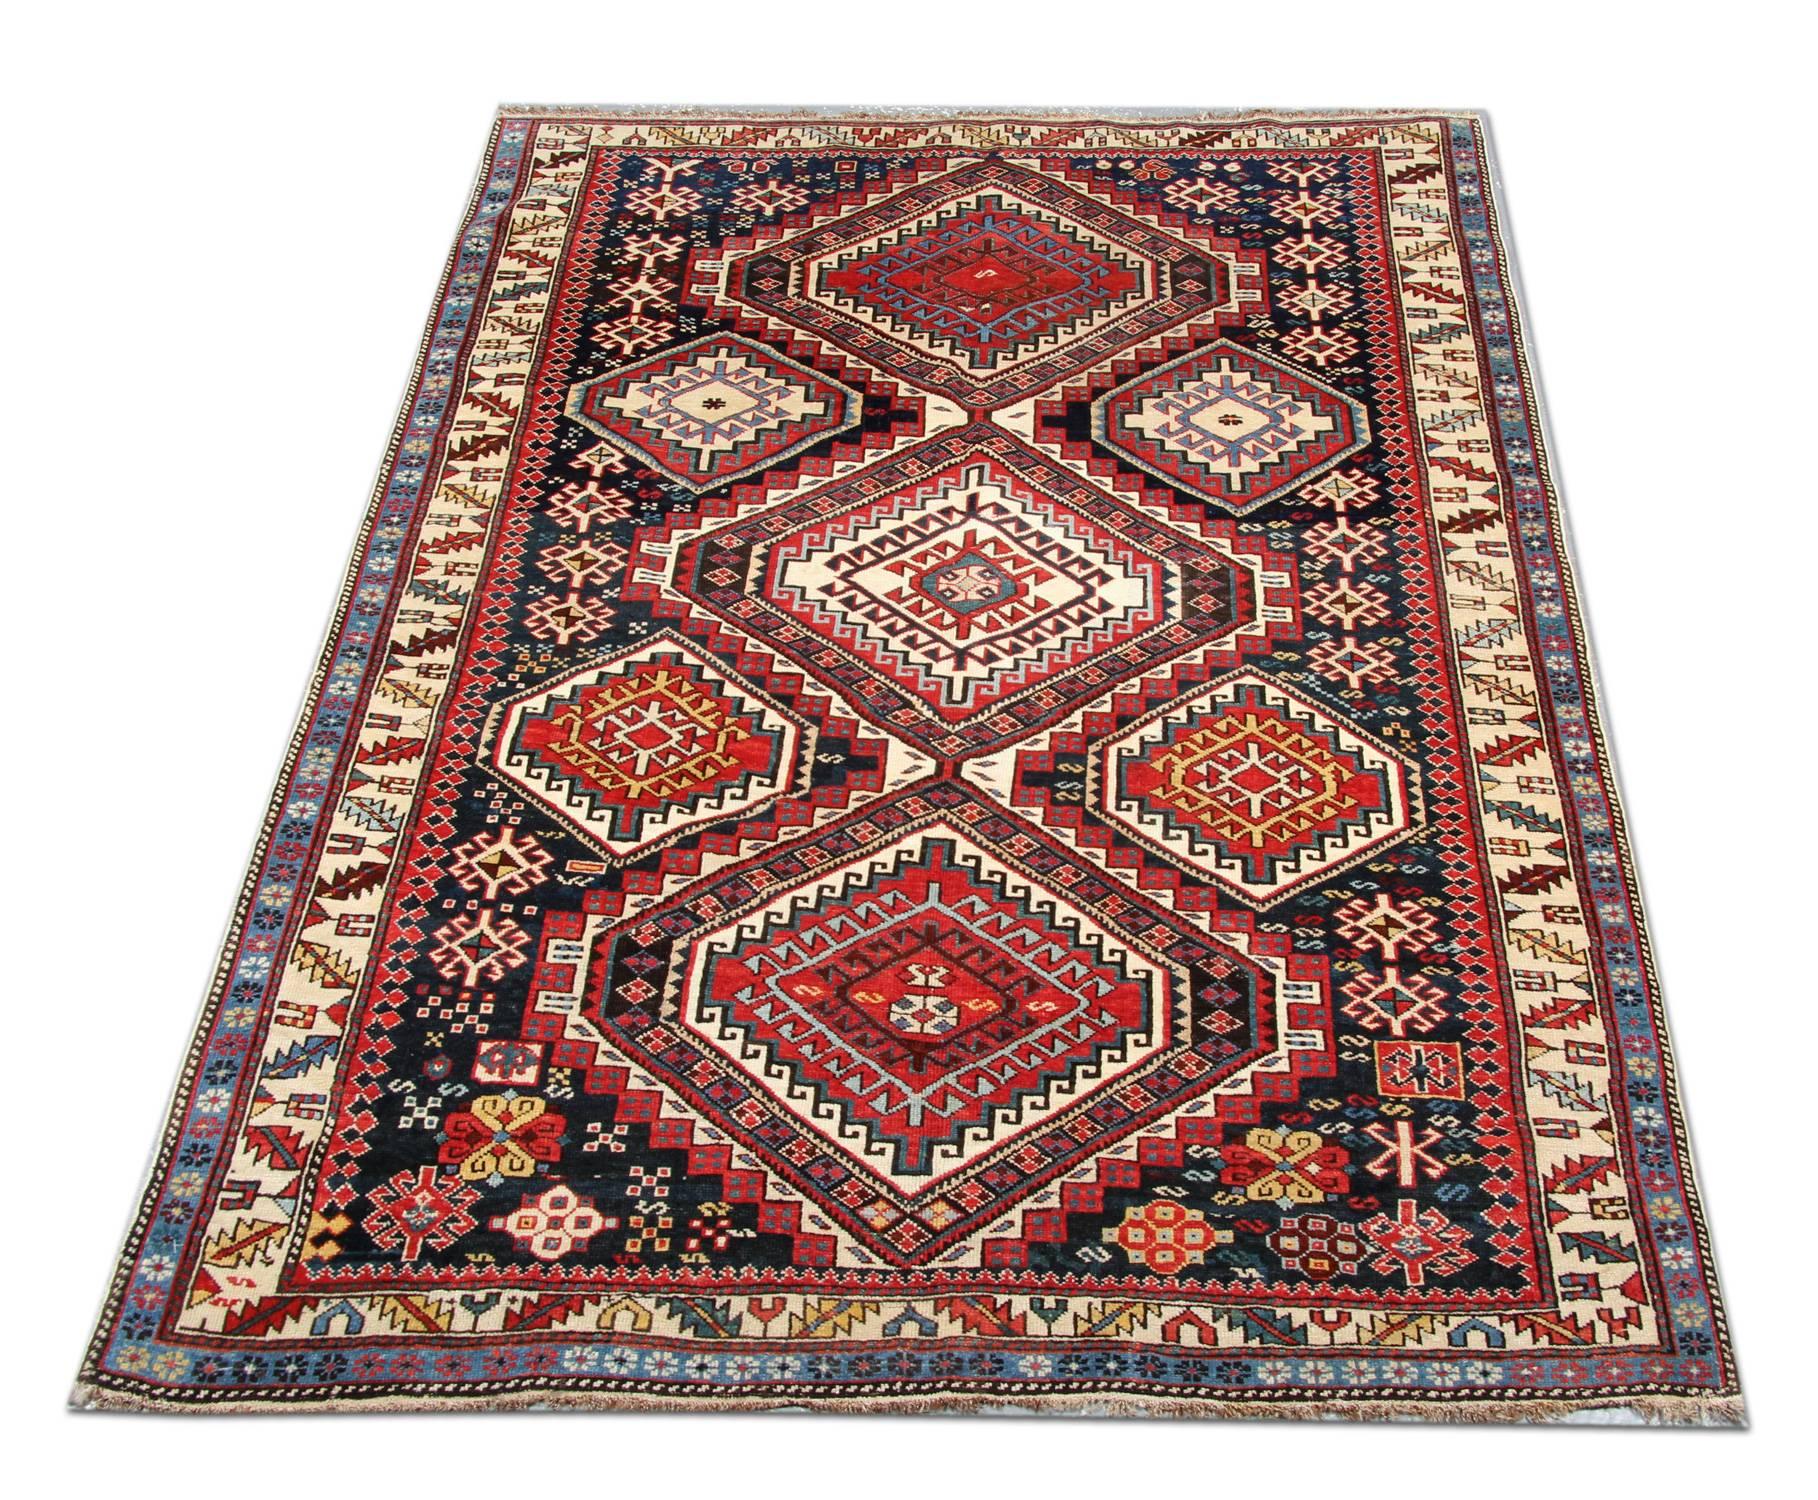 Die Schirwan-Nomaden sind im Kaukasus zu finden. Die Teppiche haben eine typische rot-braune Grundfarbe. Das Muster wird aus dem Gedächtnis geknüpft und besteht oft aus Medaillons, die sich an allen vier Kanten wiederholen. Menschen, vierbeinige